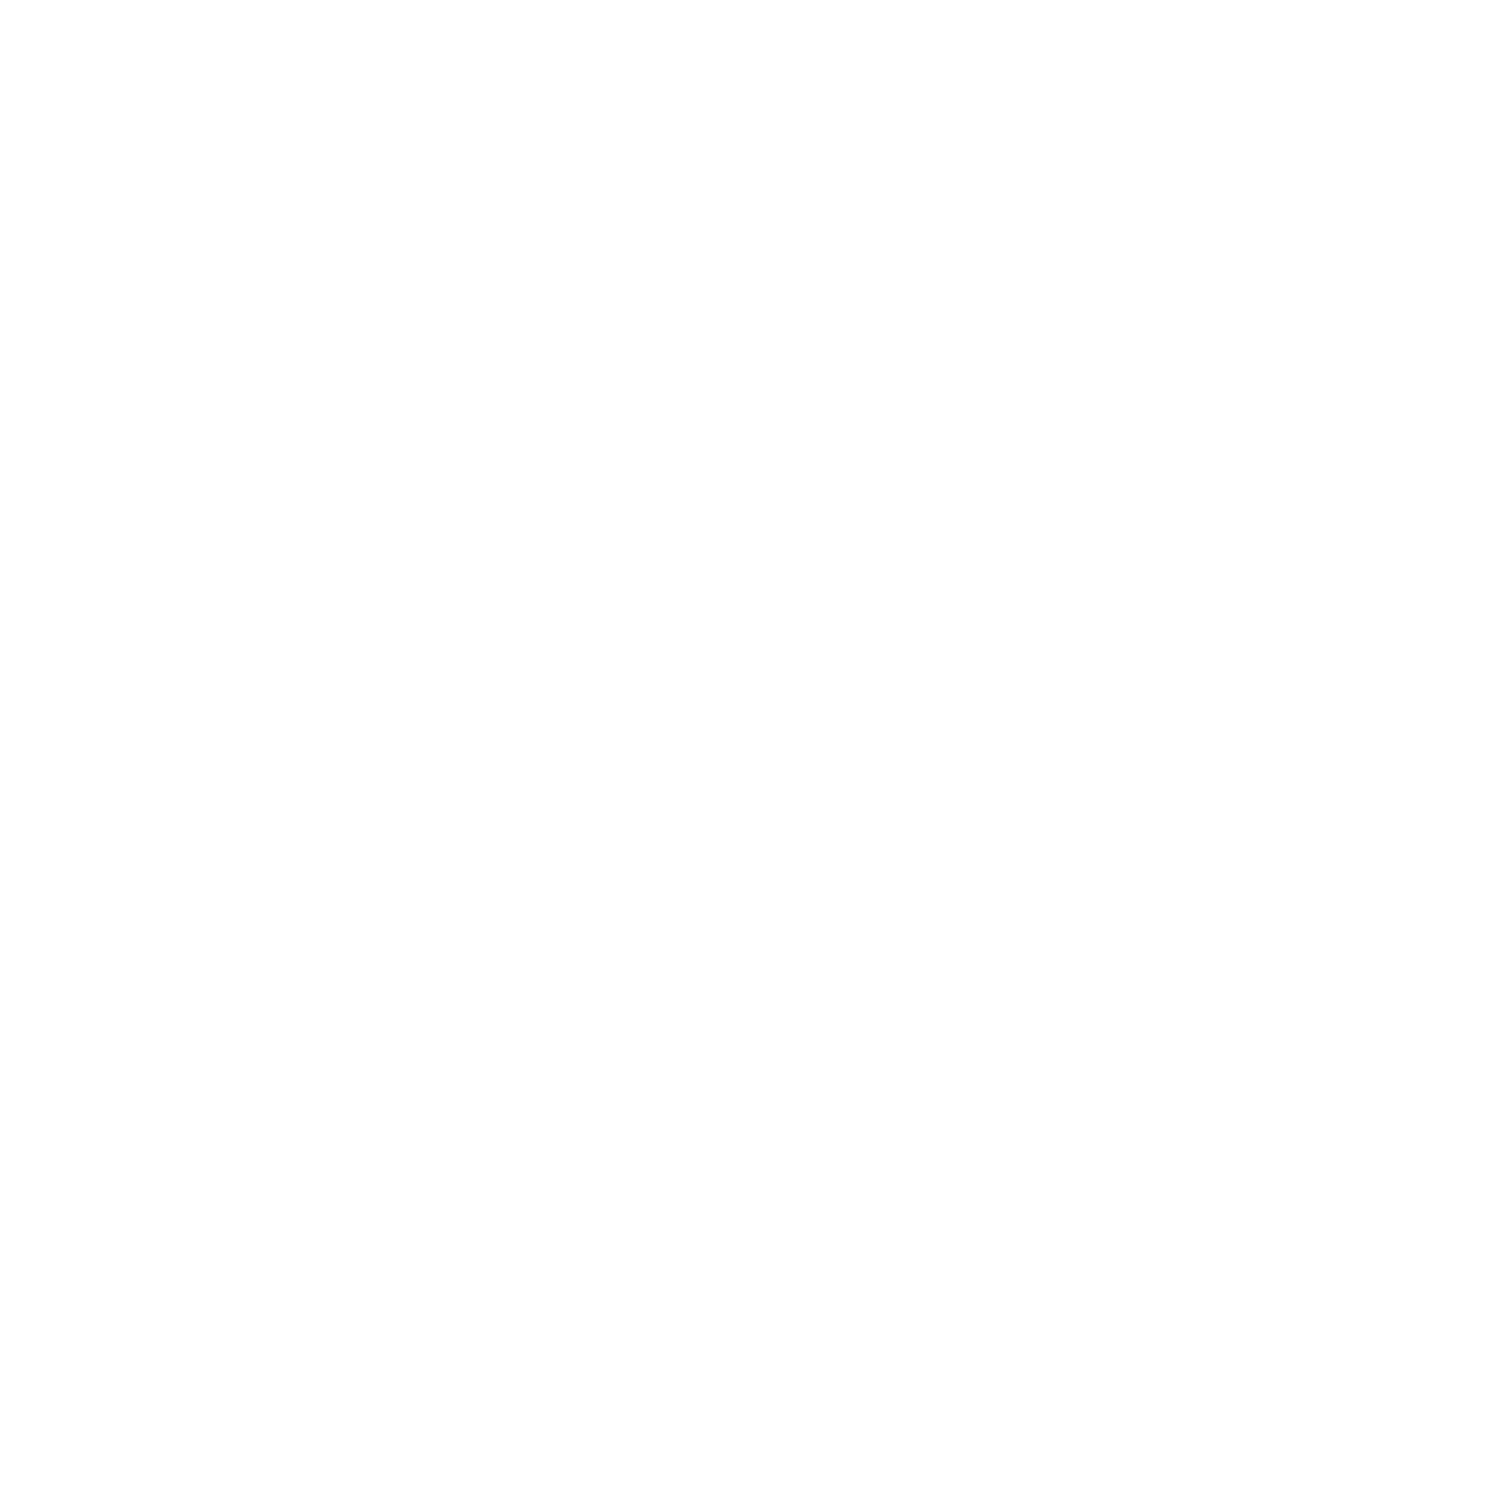 Valley Industry Association